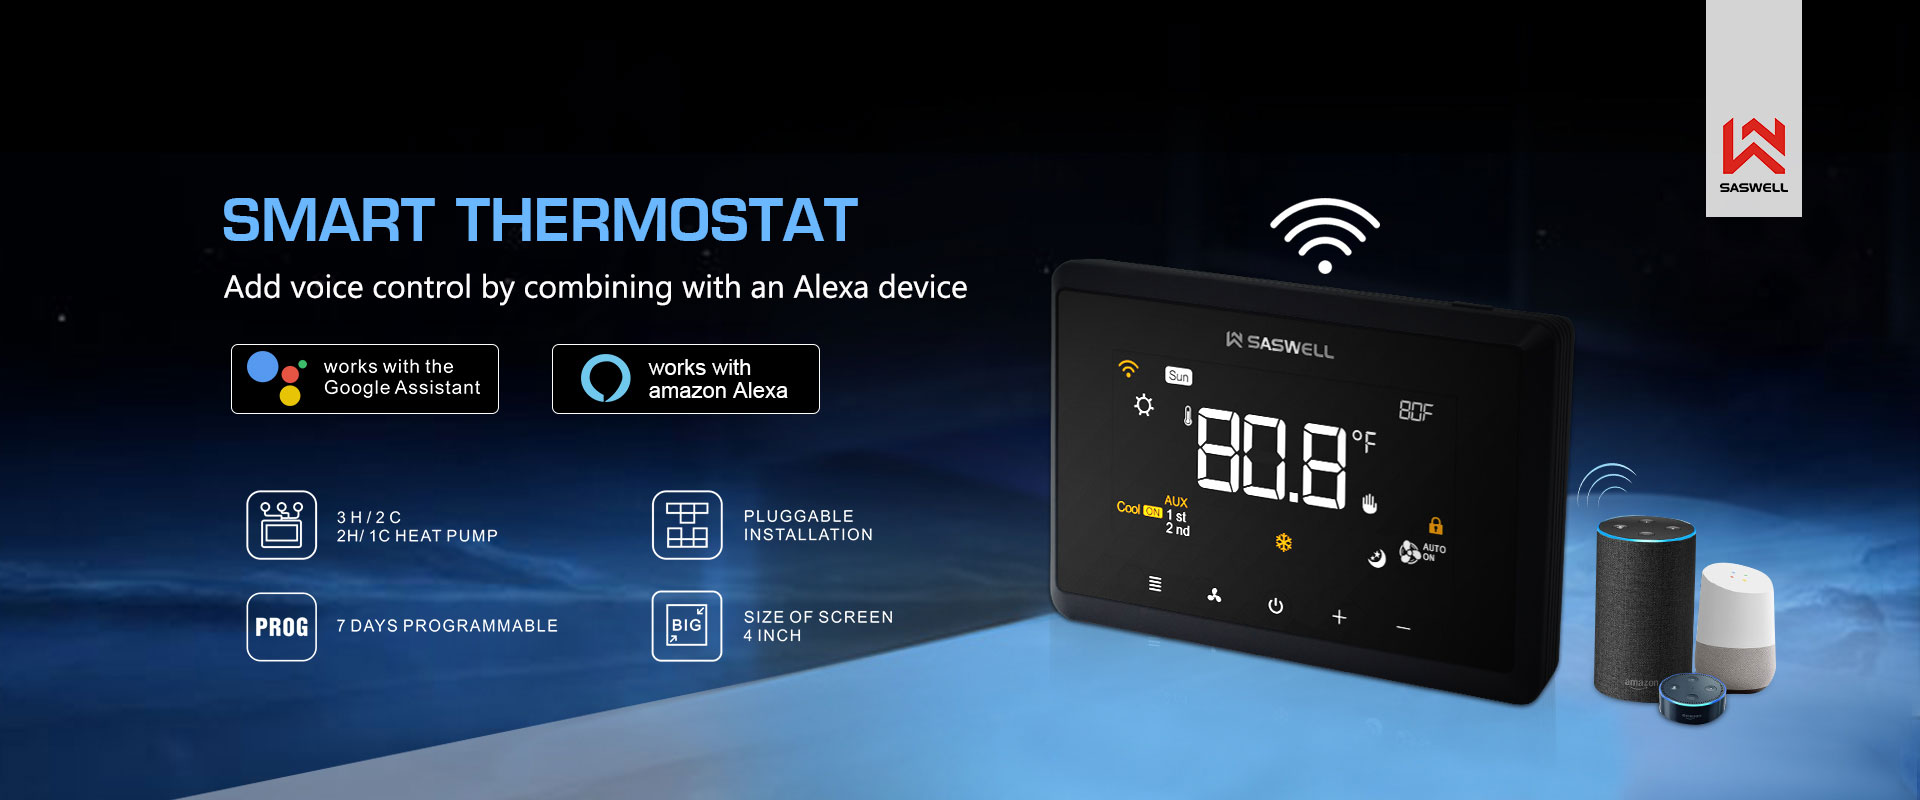 économiser de l'énergie hiver thermostat